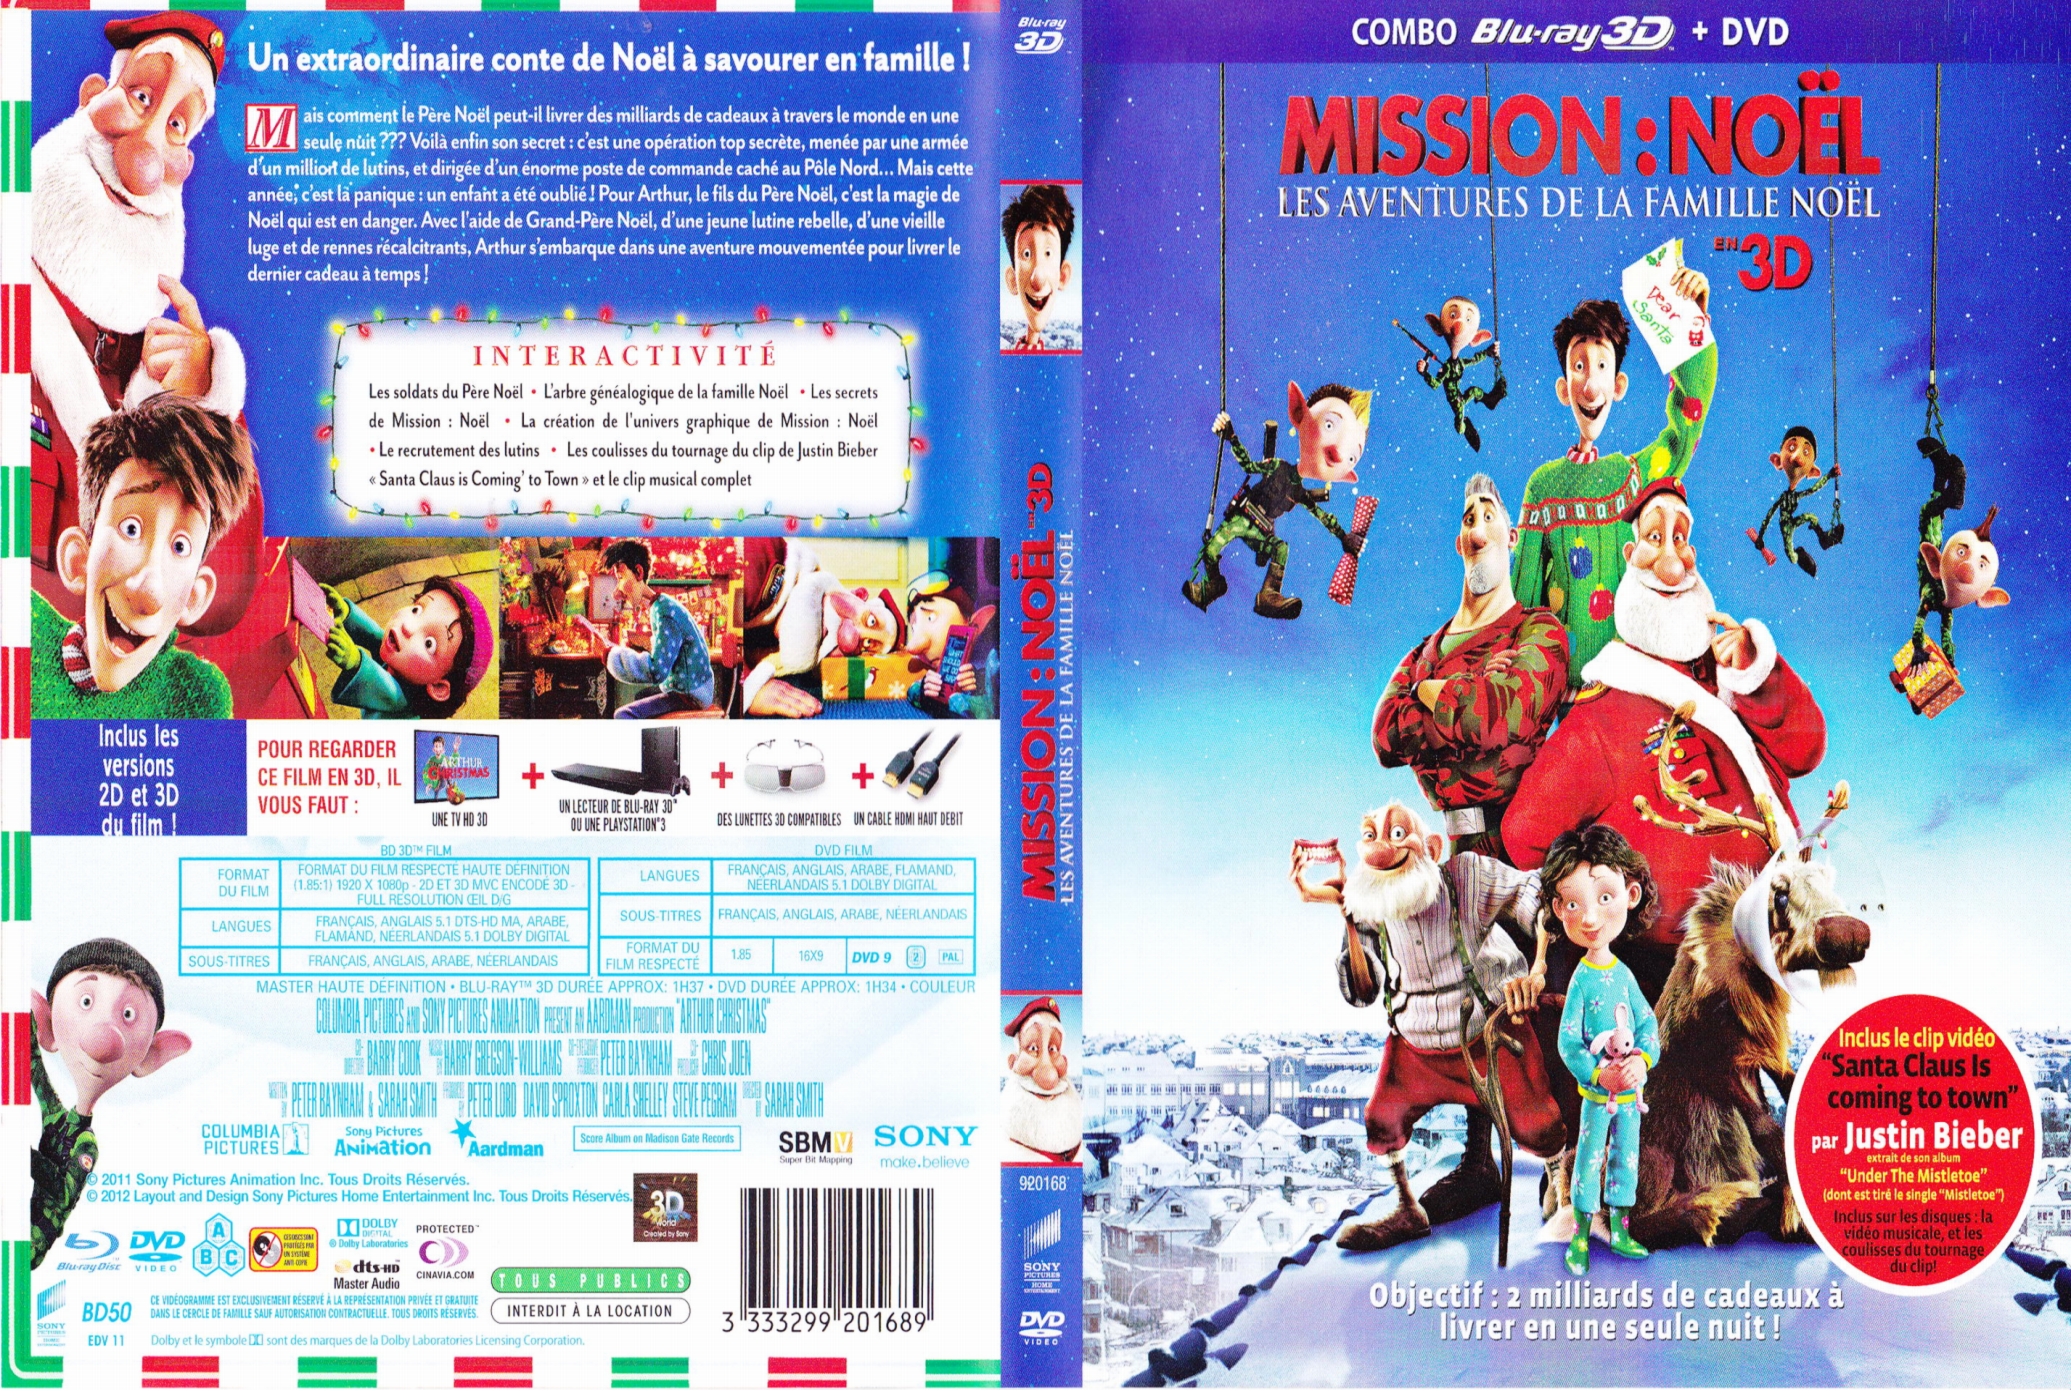 Jaquette DVD Mission Noel - Les aventures de la famille noel (BLU-RAY)